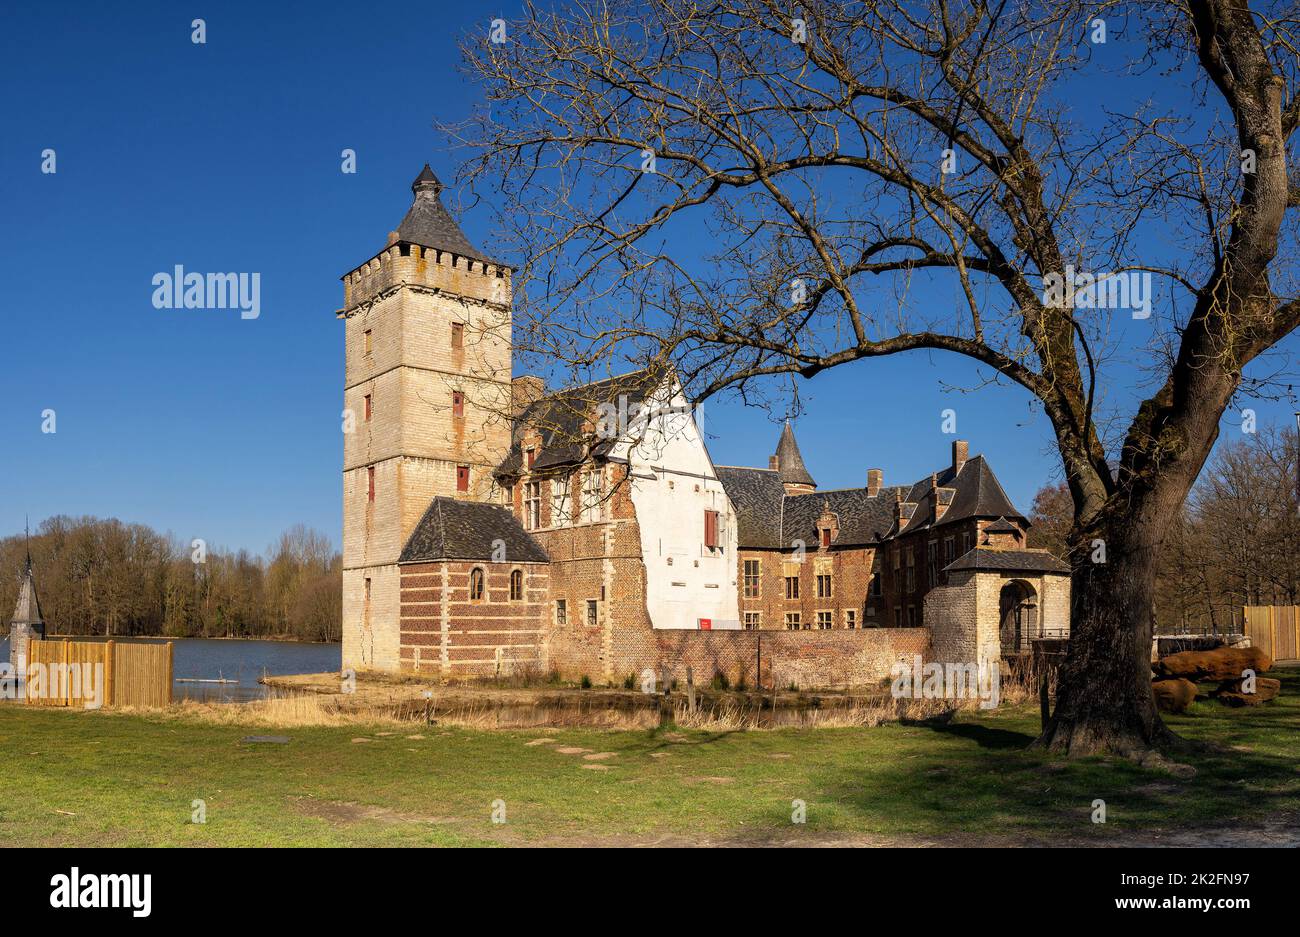 Castle van Horst in Belgium Stock Photo